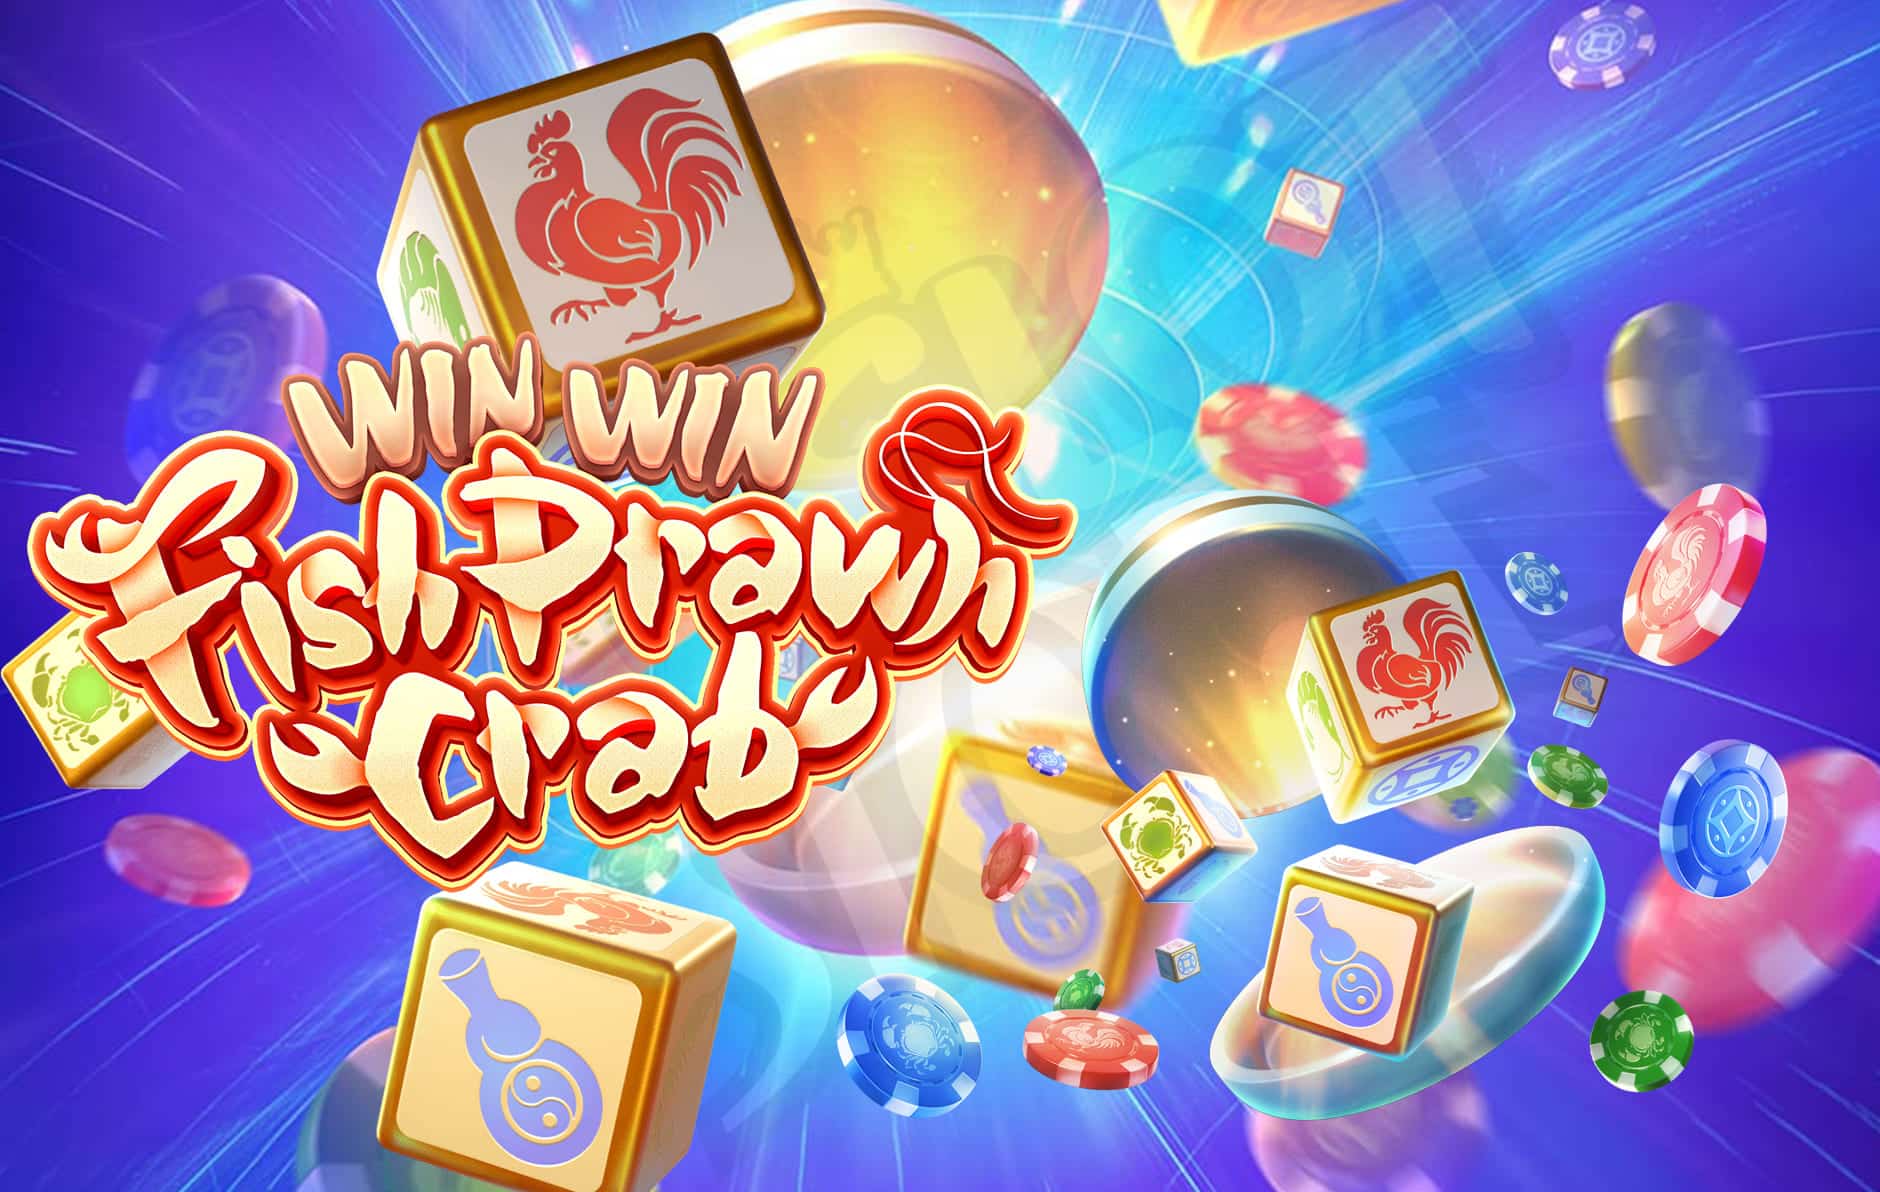 ทดลองเล่นสล็อต Win Win Fish Prawn Crab